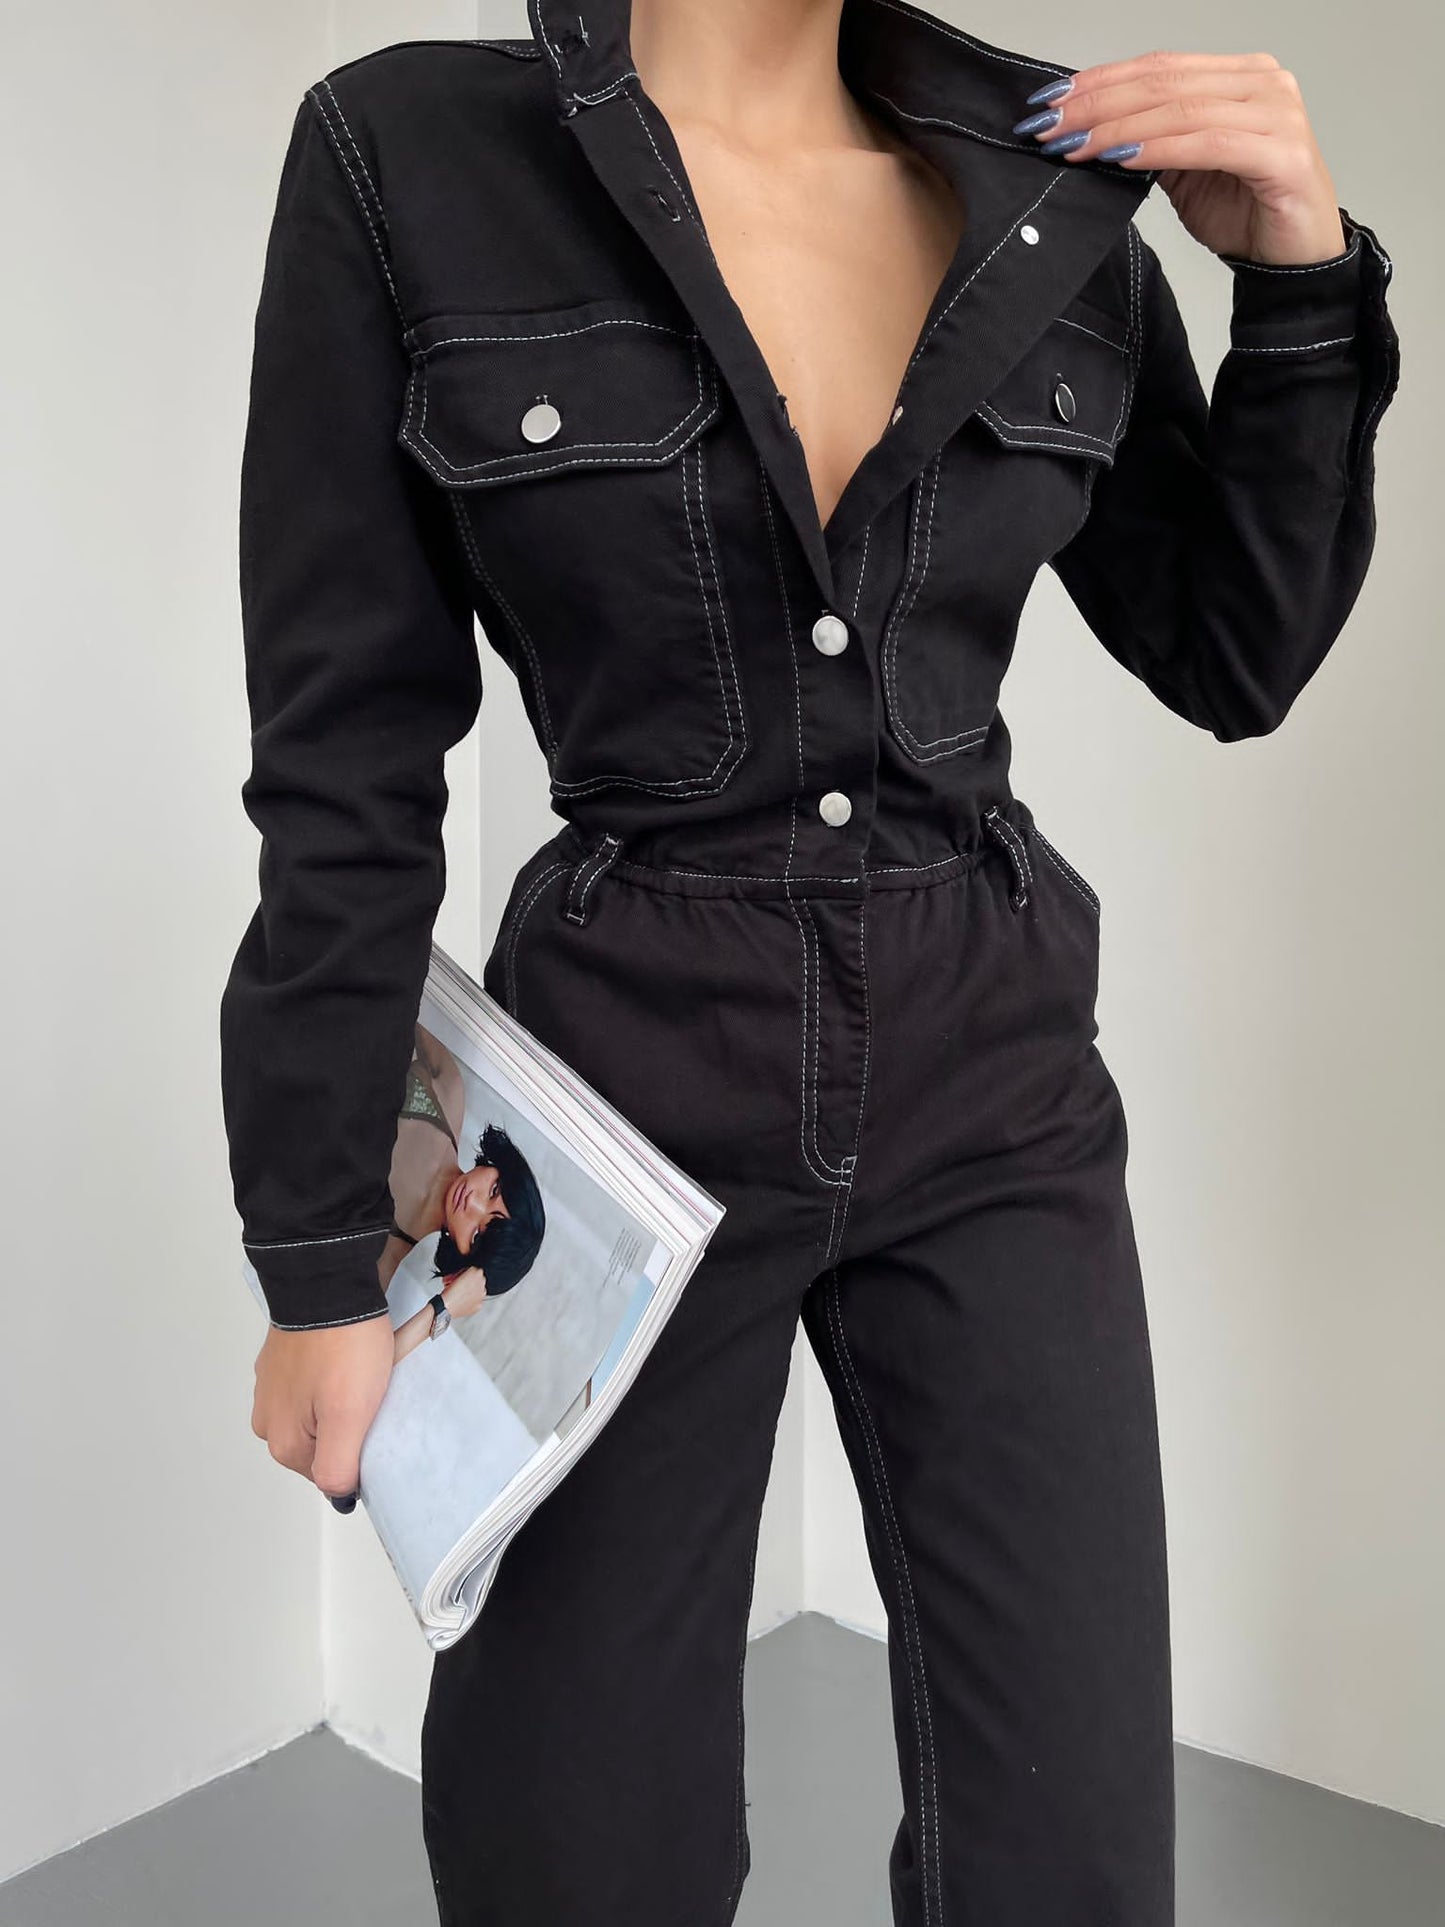 Дамски гащеризон GABRIEL  https://bvseductive.com/products/women-s-jumpsuit-gabriele-1  стилен дамски гащеризон в черен цвят изработен от приятна материя моделът е с комфортна кройка супер интересно предложение за Вашата визия